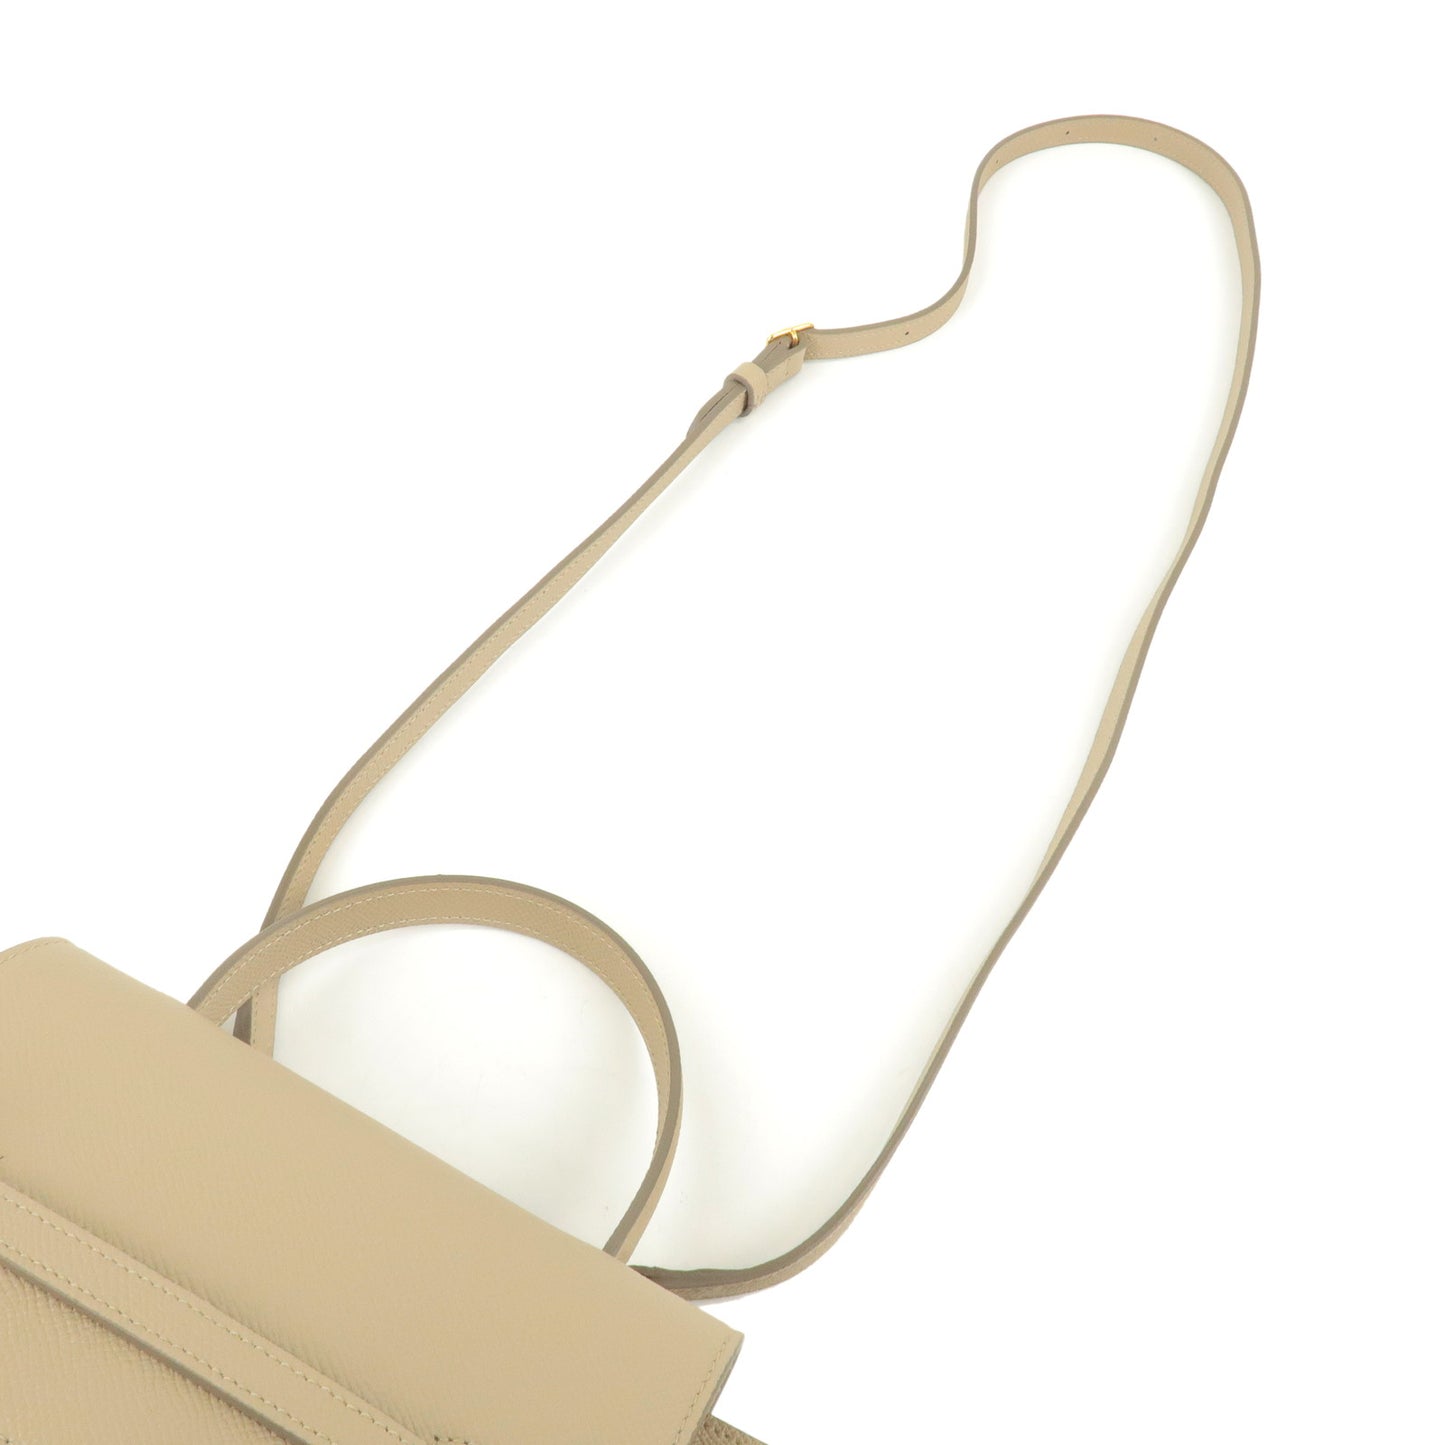 CELINE Leather Belt Bag Nano 2Way Bag Light Taupe 189003